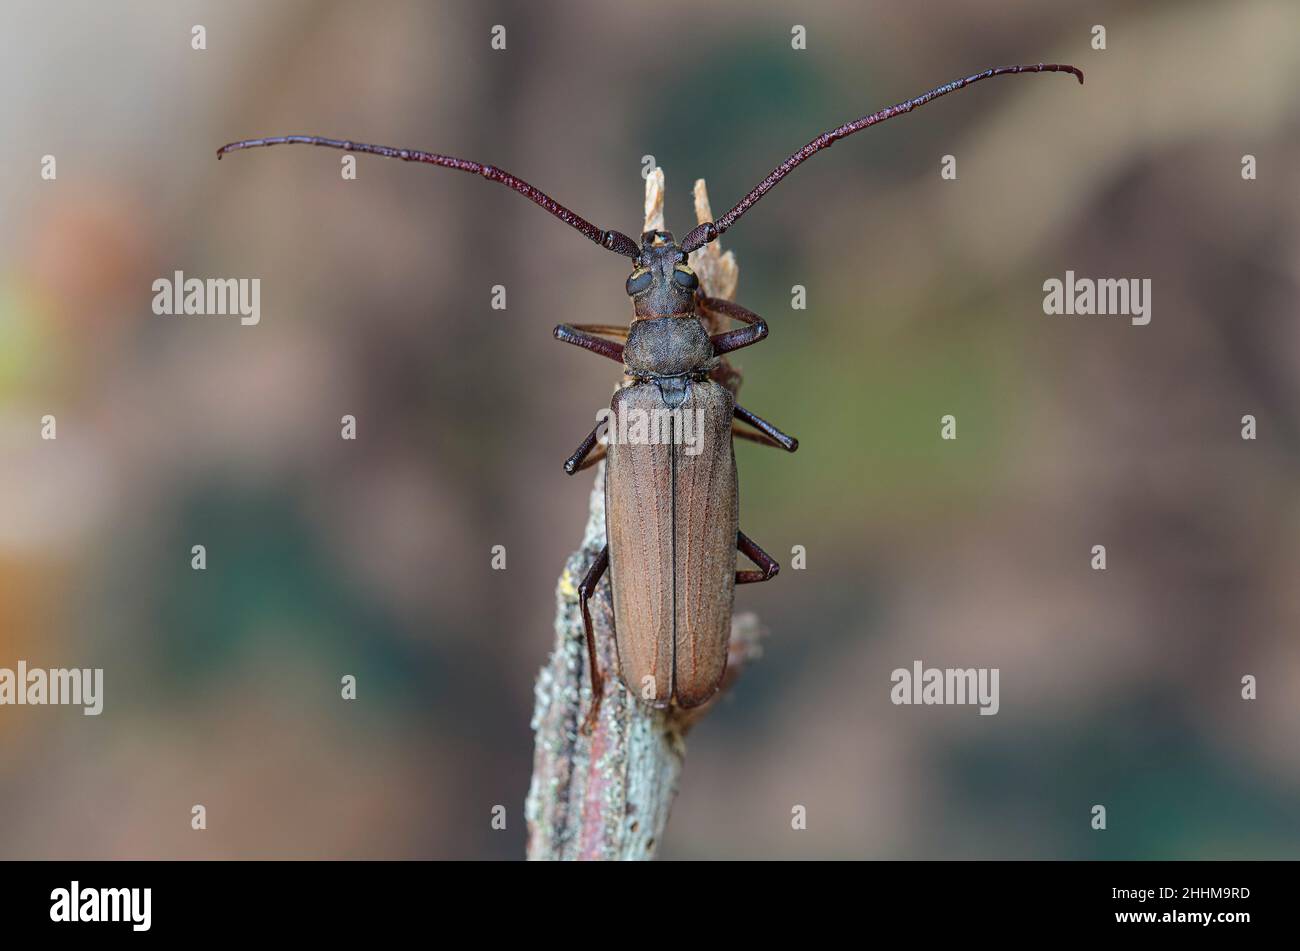 Aegosoma scabricorne un grande scarabeo europeo longhorn in via di estinzione in vista ravvicinata Foto Stock